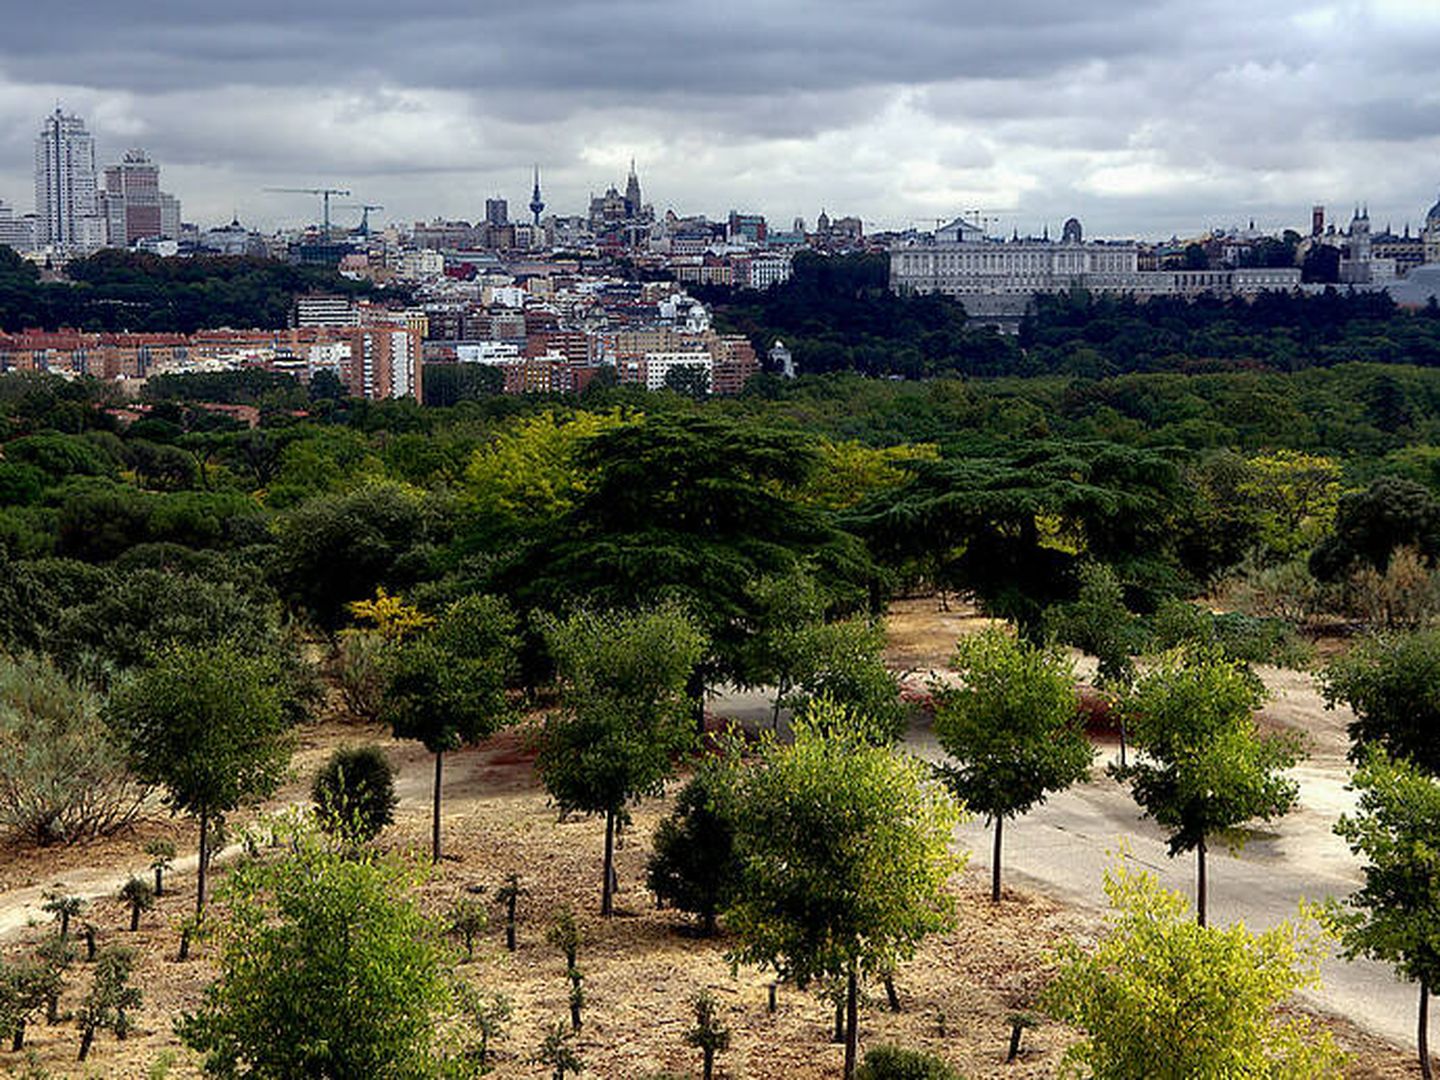 Vista de Madrid desde la Casa de Campo. (Flickr)